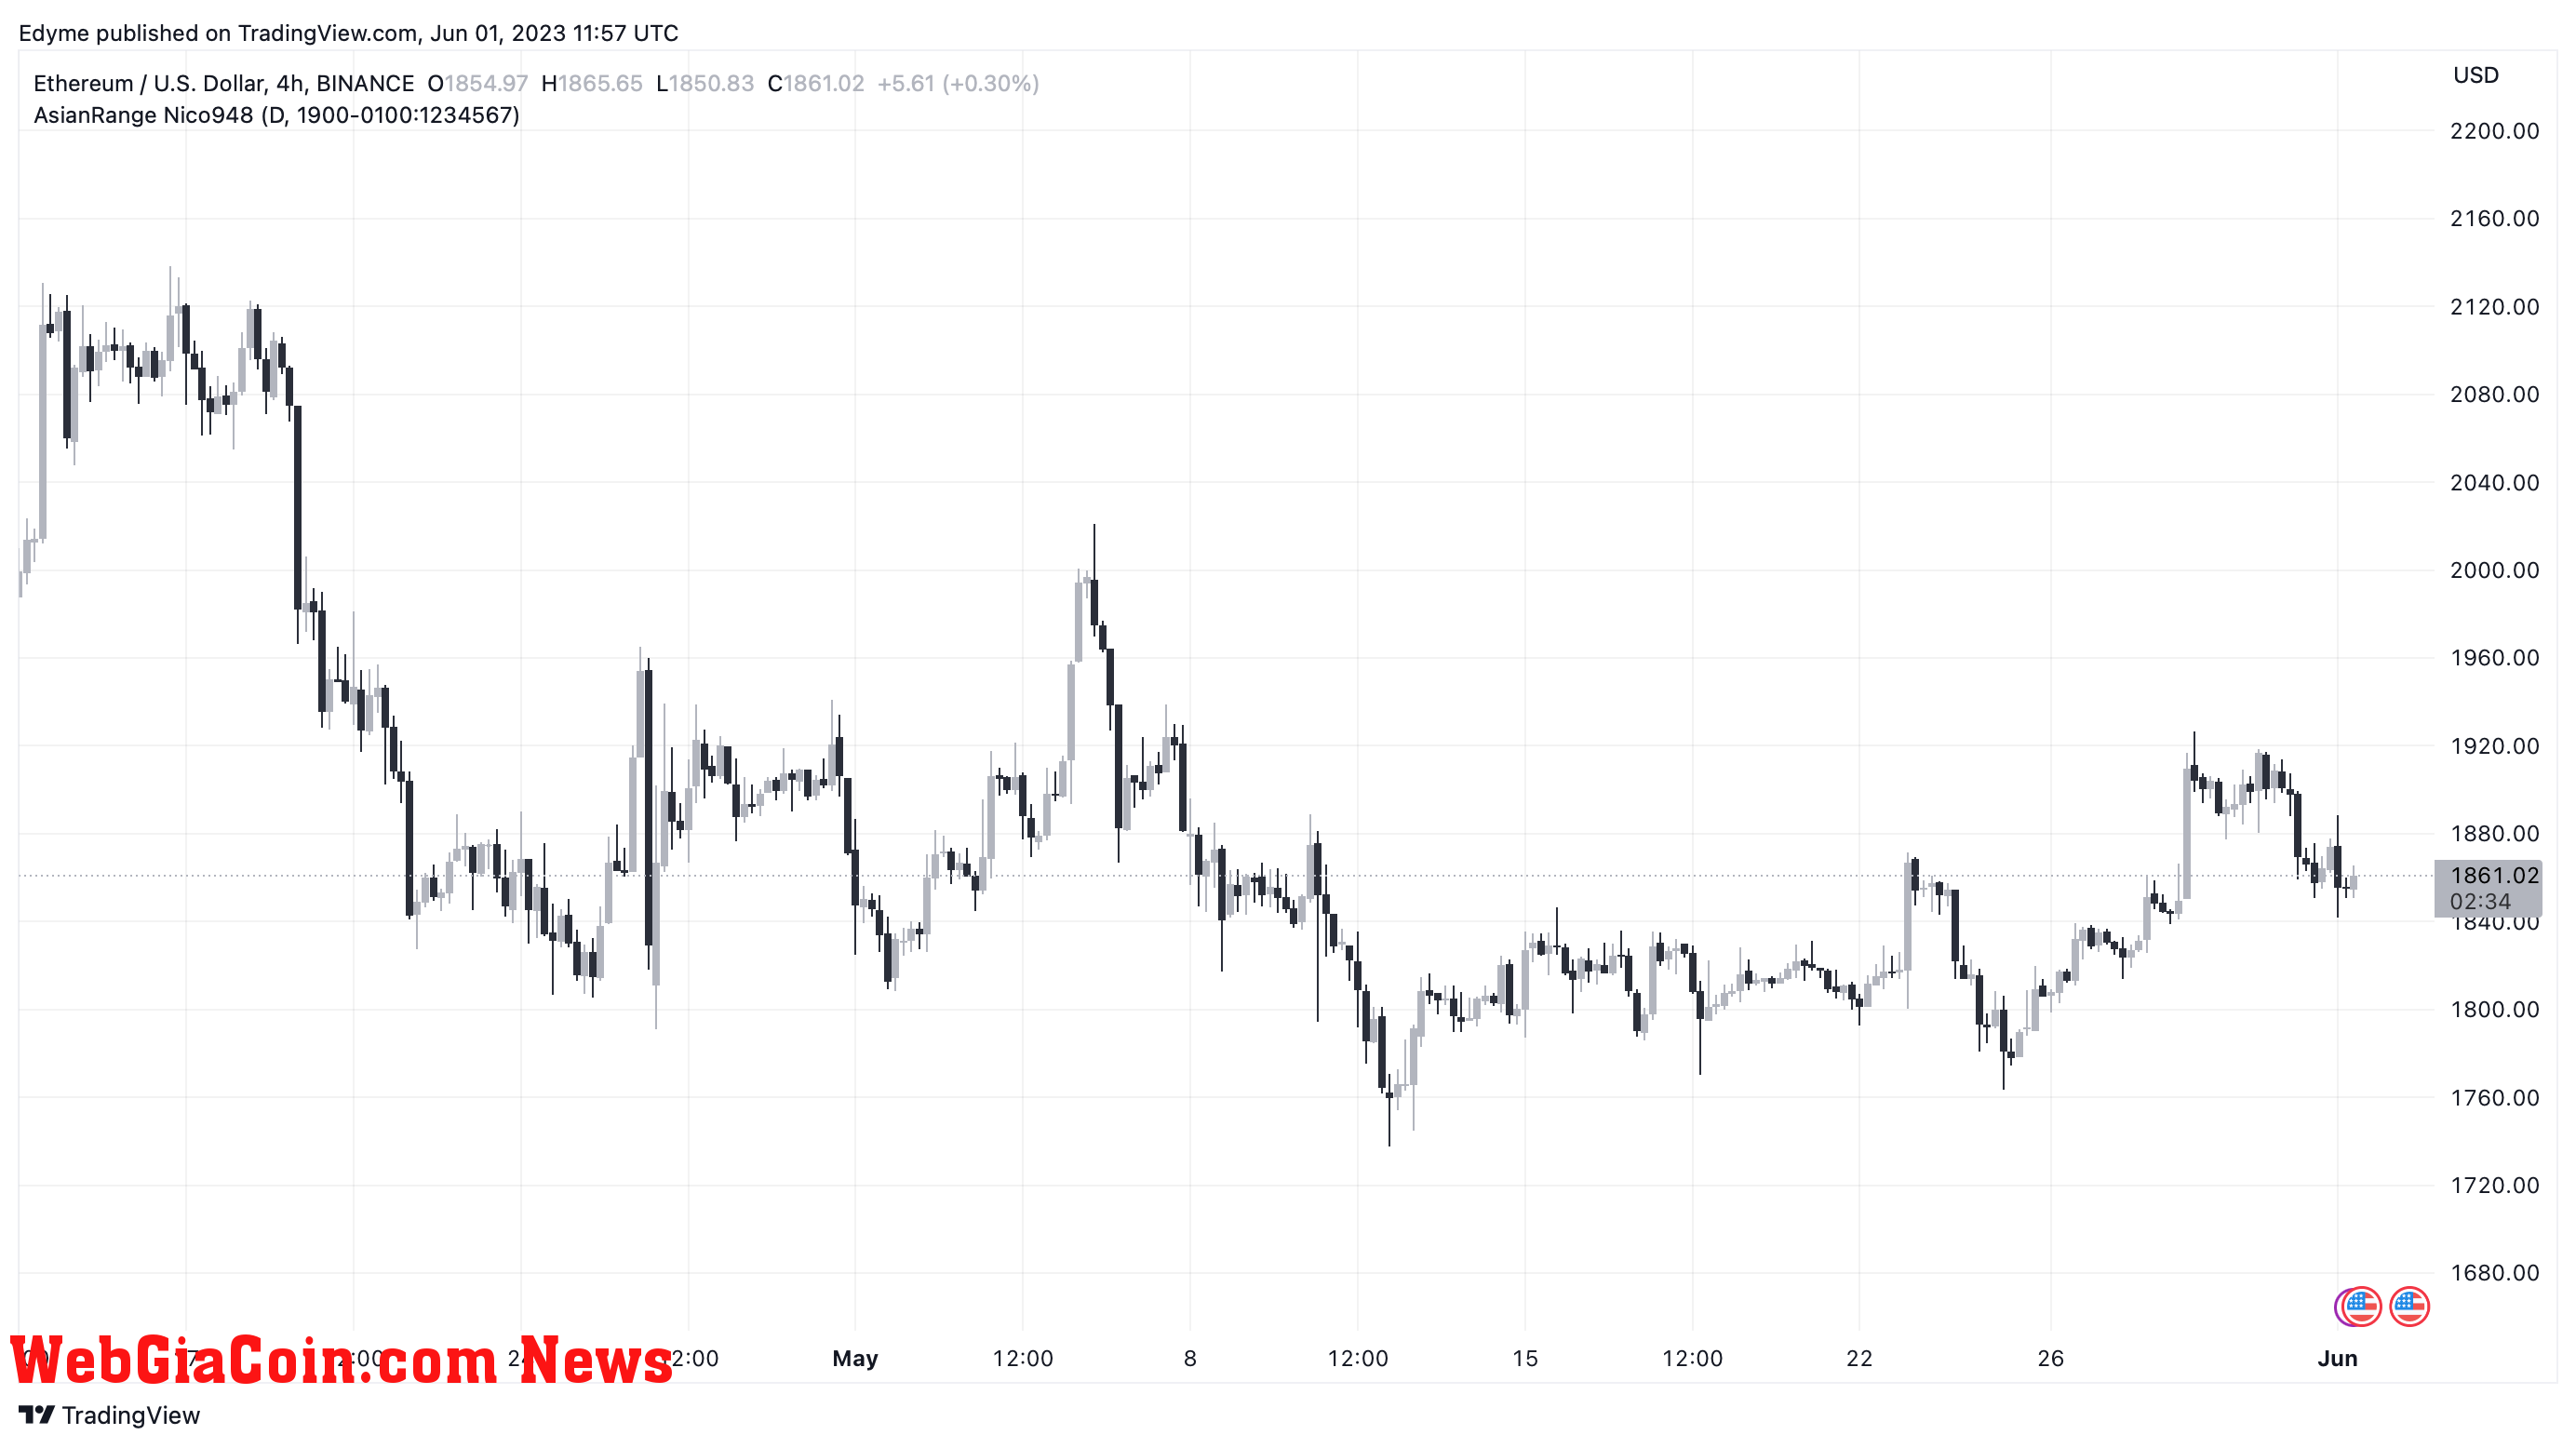 Ethereum (ETH)’s price chart on TradingView